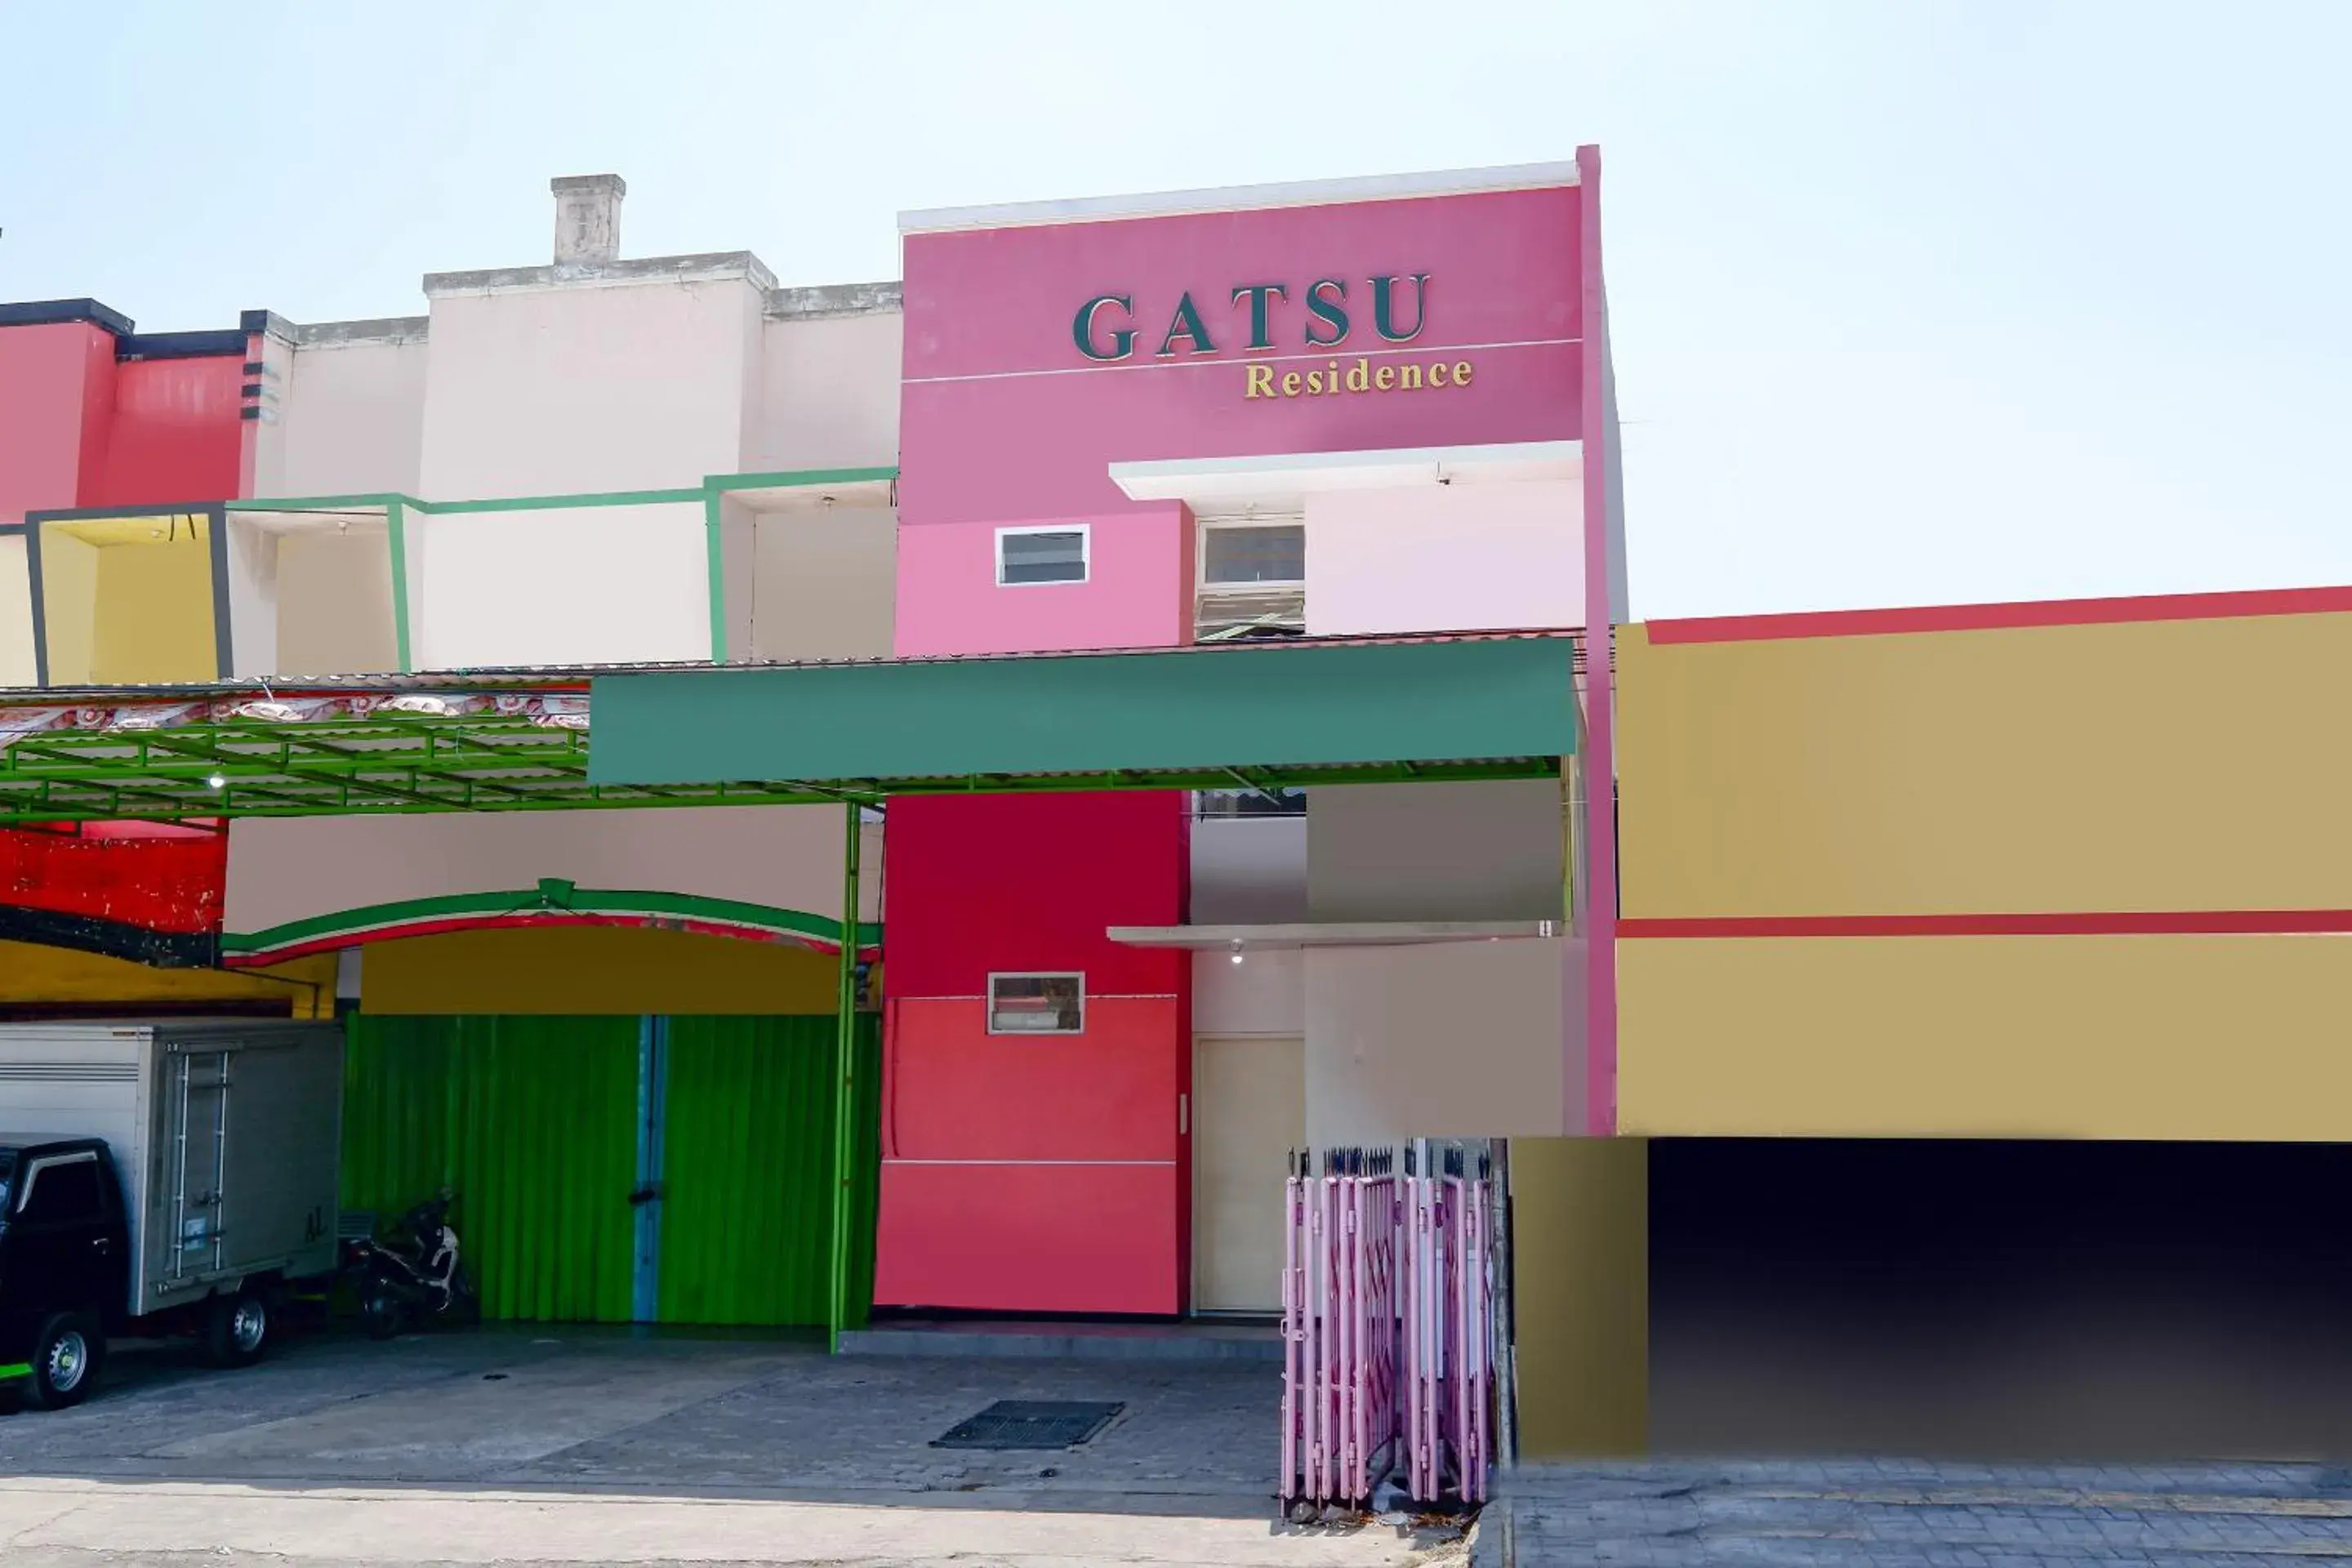 Facade/entrance, Property Building in OYO 1815 Gatsu Residence